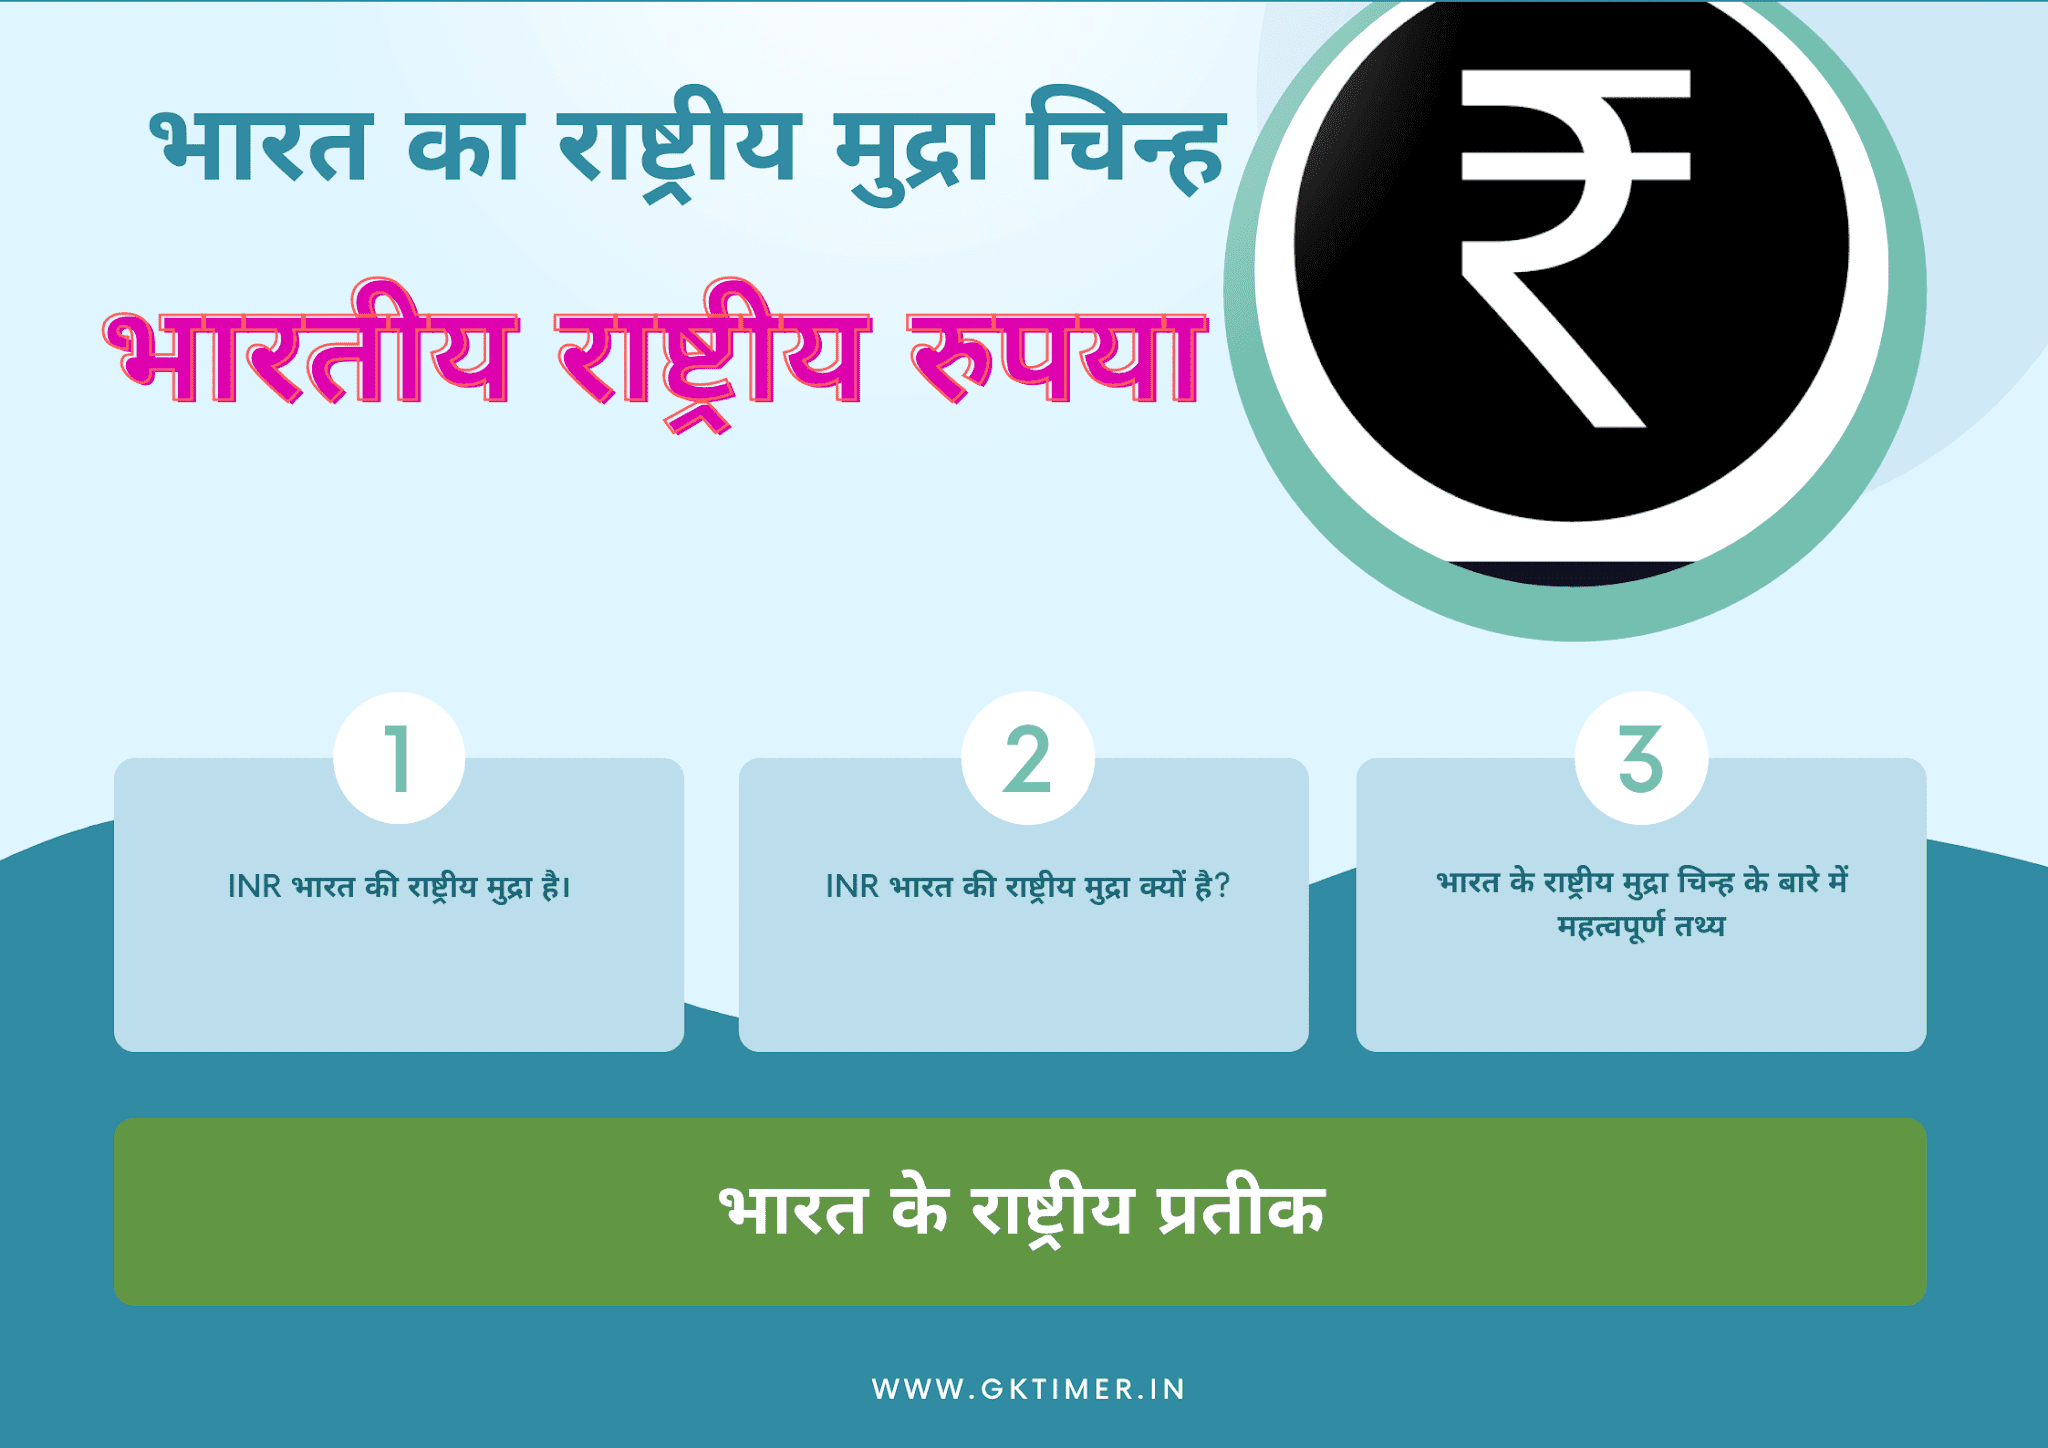 भारत का राष्ट्रीय मुद्रा प्रतीक : भारतीय राष्ट्रीय रुपया | National Currency Symbol of India in Hindi : ₹